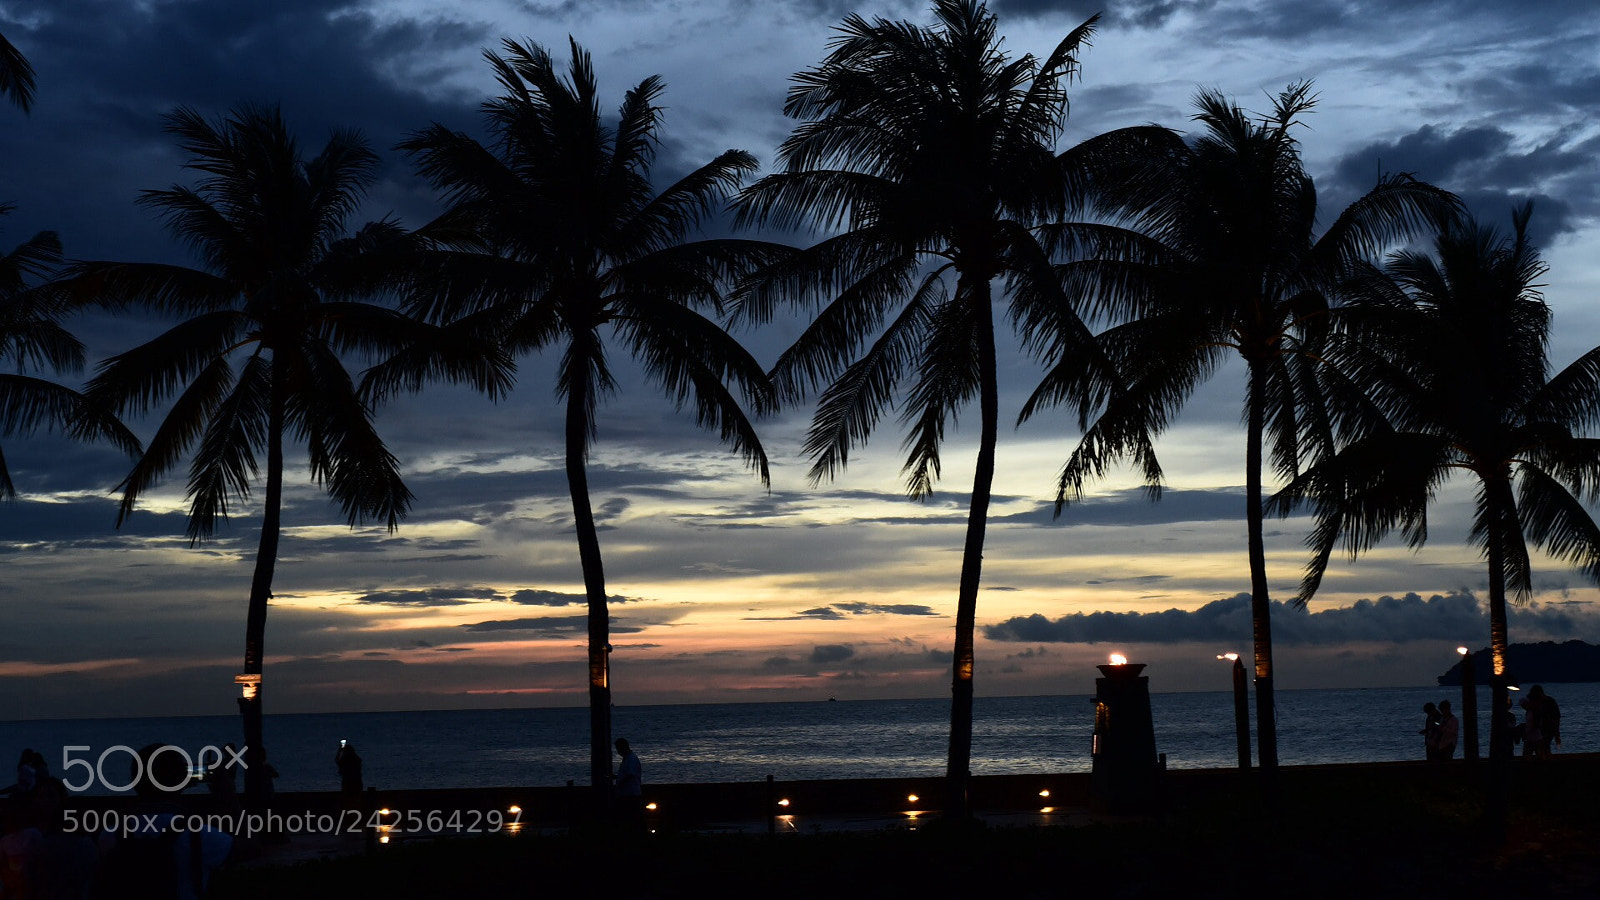 Nikon D750 sample photo. Kota kinabalu sunset photography